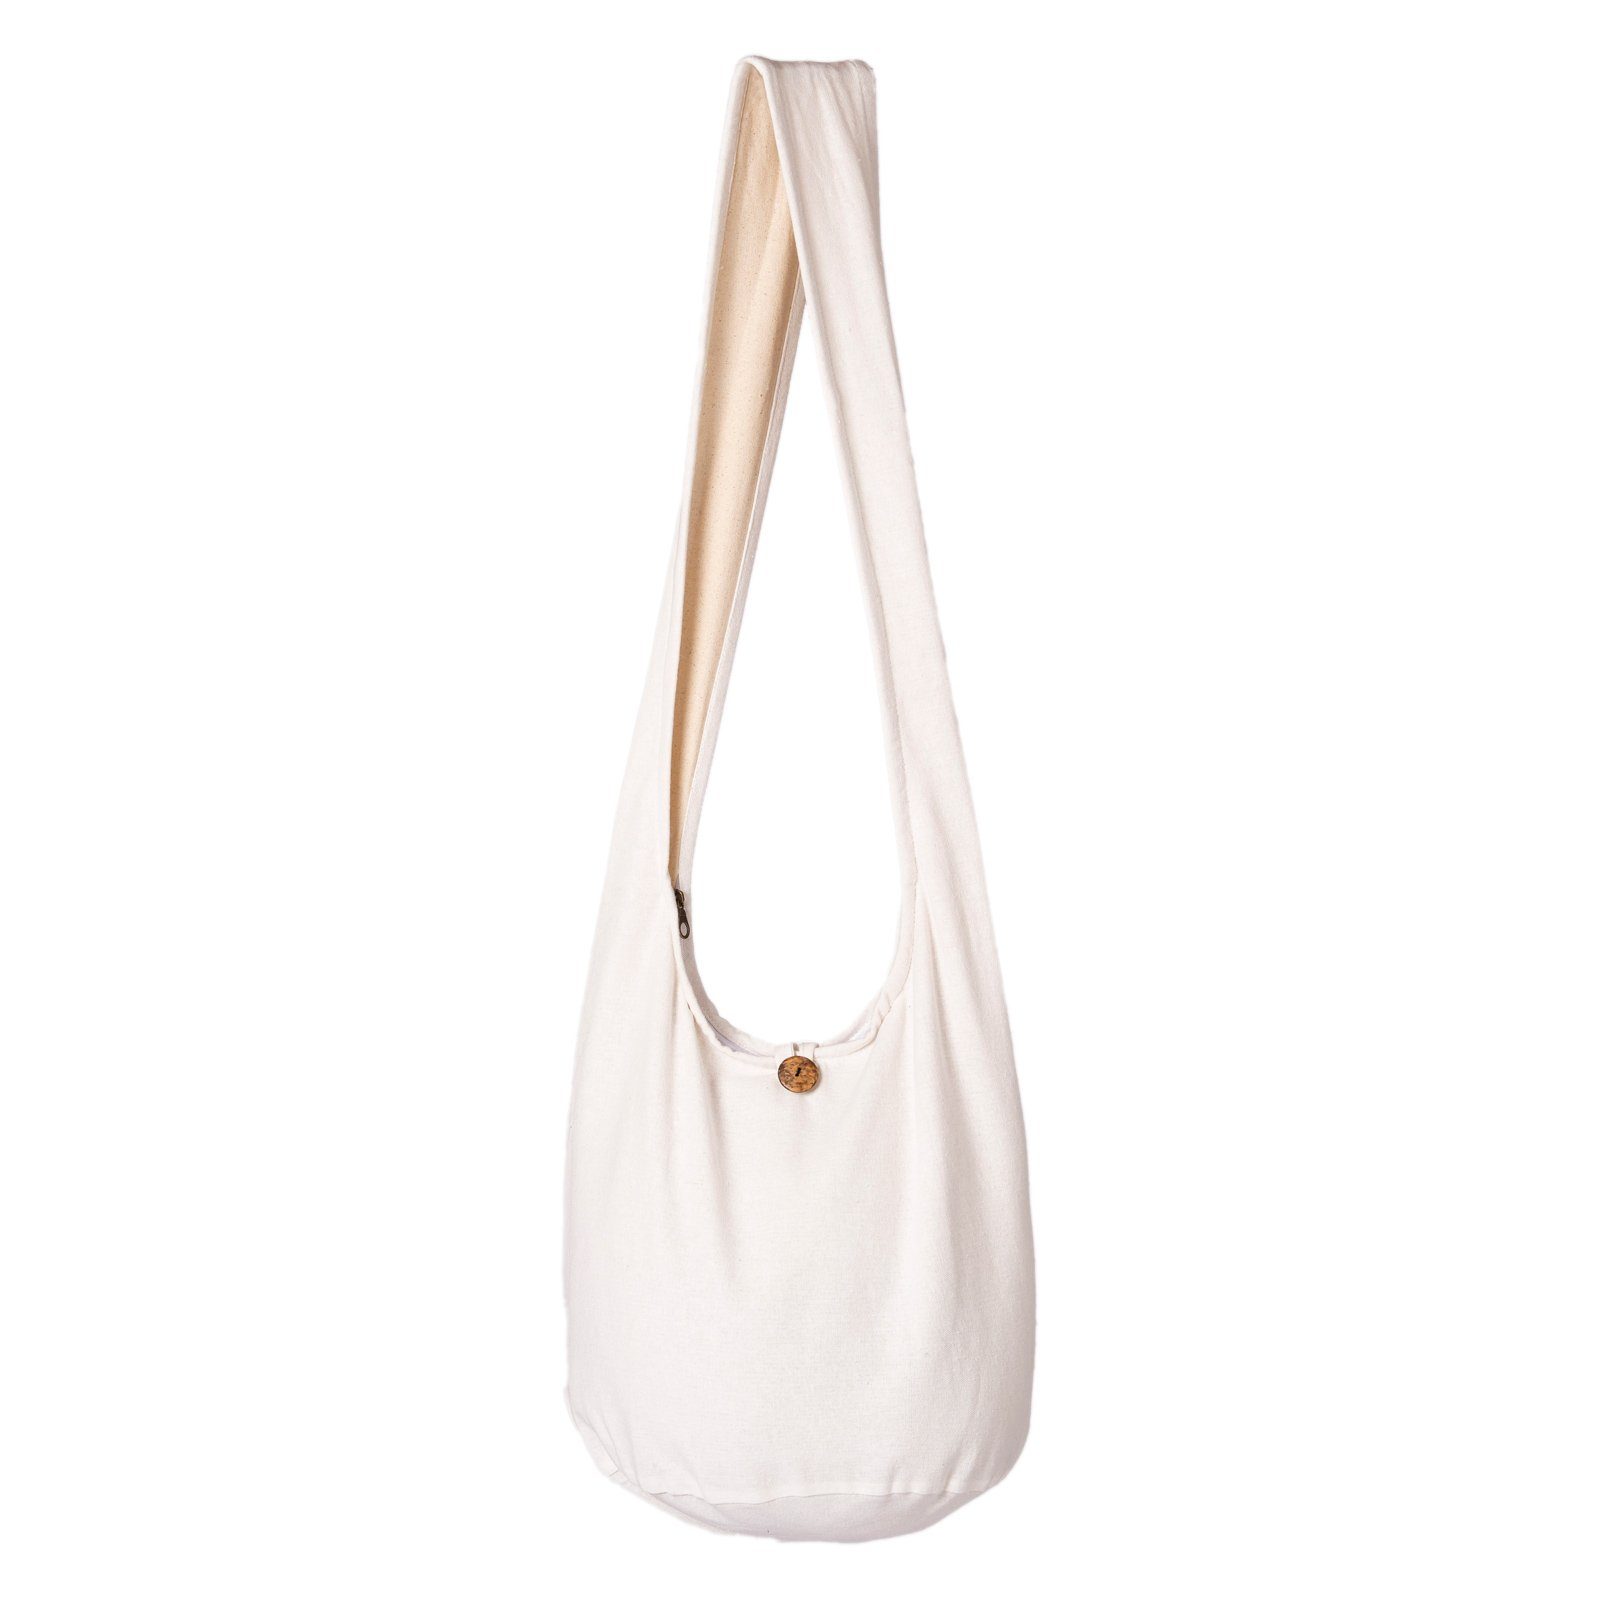 PANASIAM Beuteltasche Schulterbeutel einfarbig Schultertasche aus 100% Baumwolle in 2 Größen, Umhängetasche auch als Wickeltasche Handtasche oder Strandtasche weiß